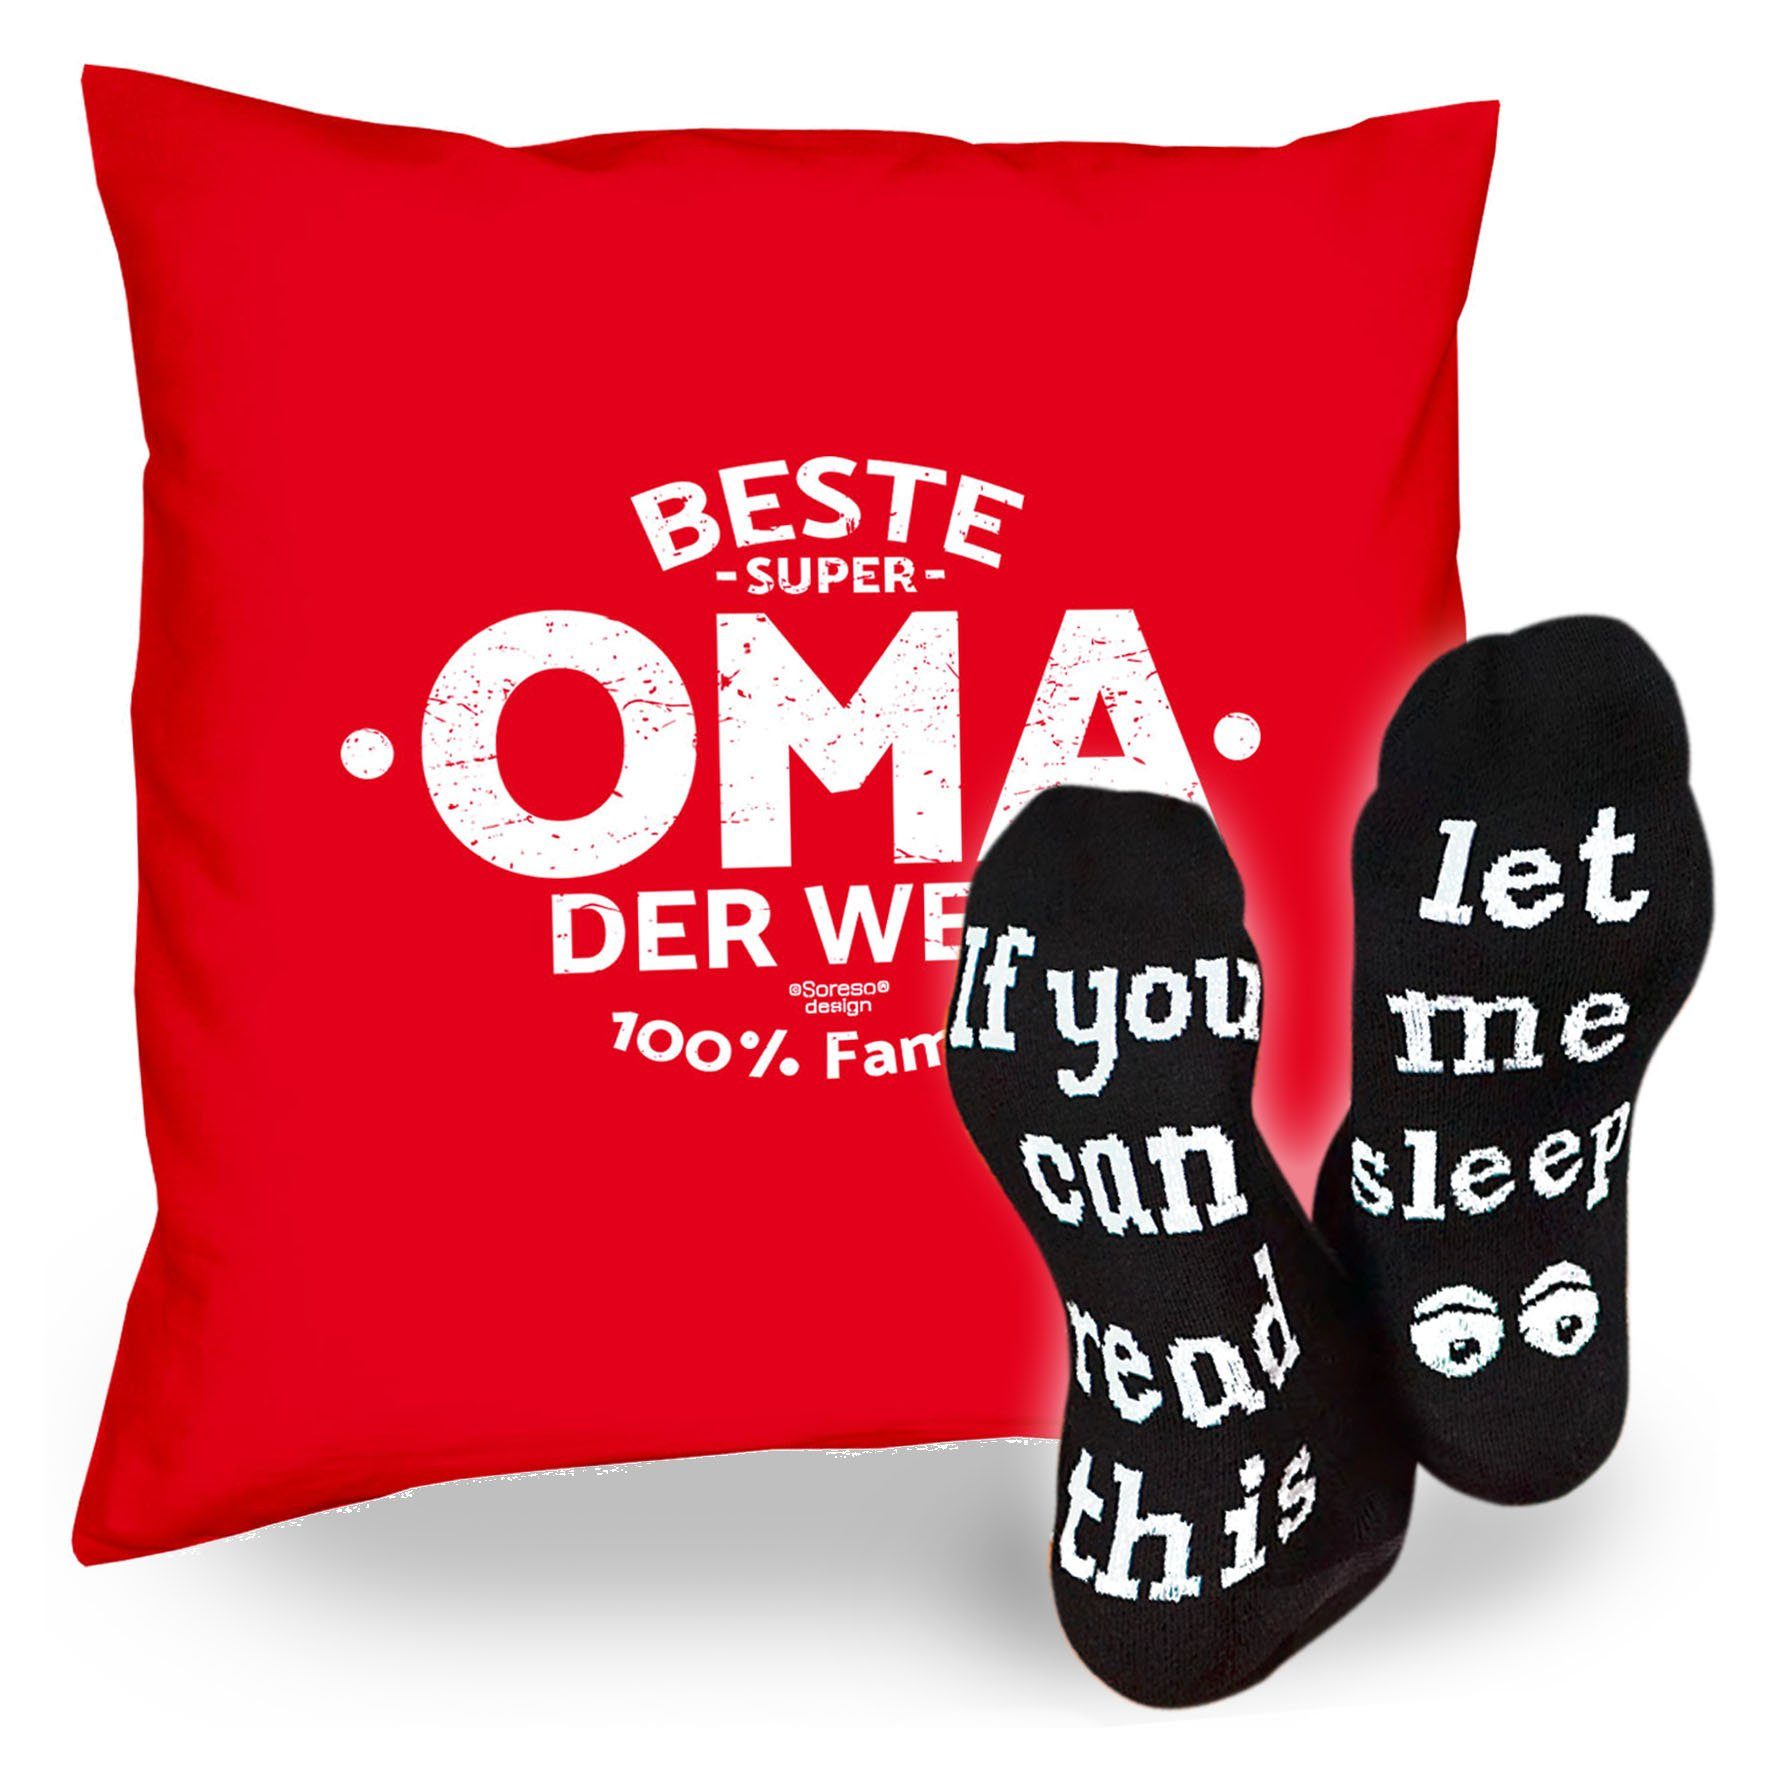 Welt Beste Geschenk der Socken Oma Dekokissen Sleep, Sprüche & rot Kissen Soreso® Geburtstagsgeschenk